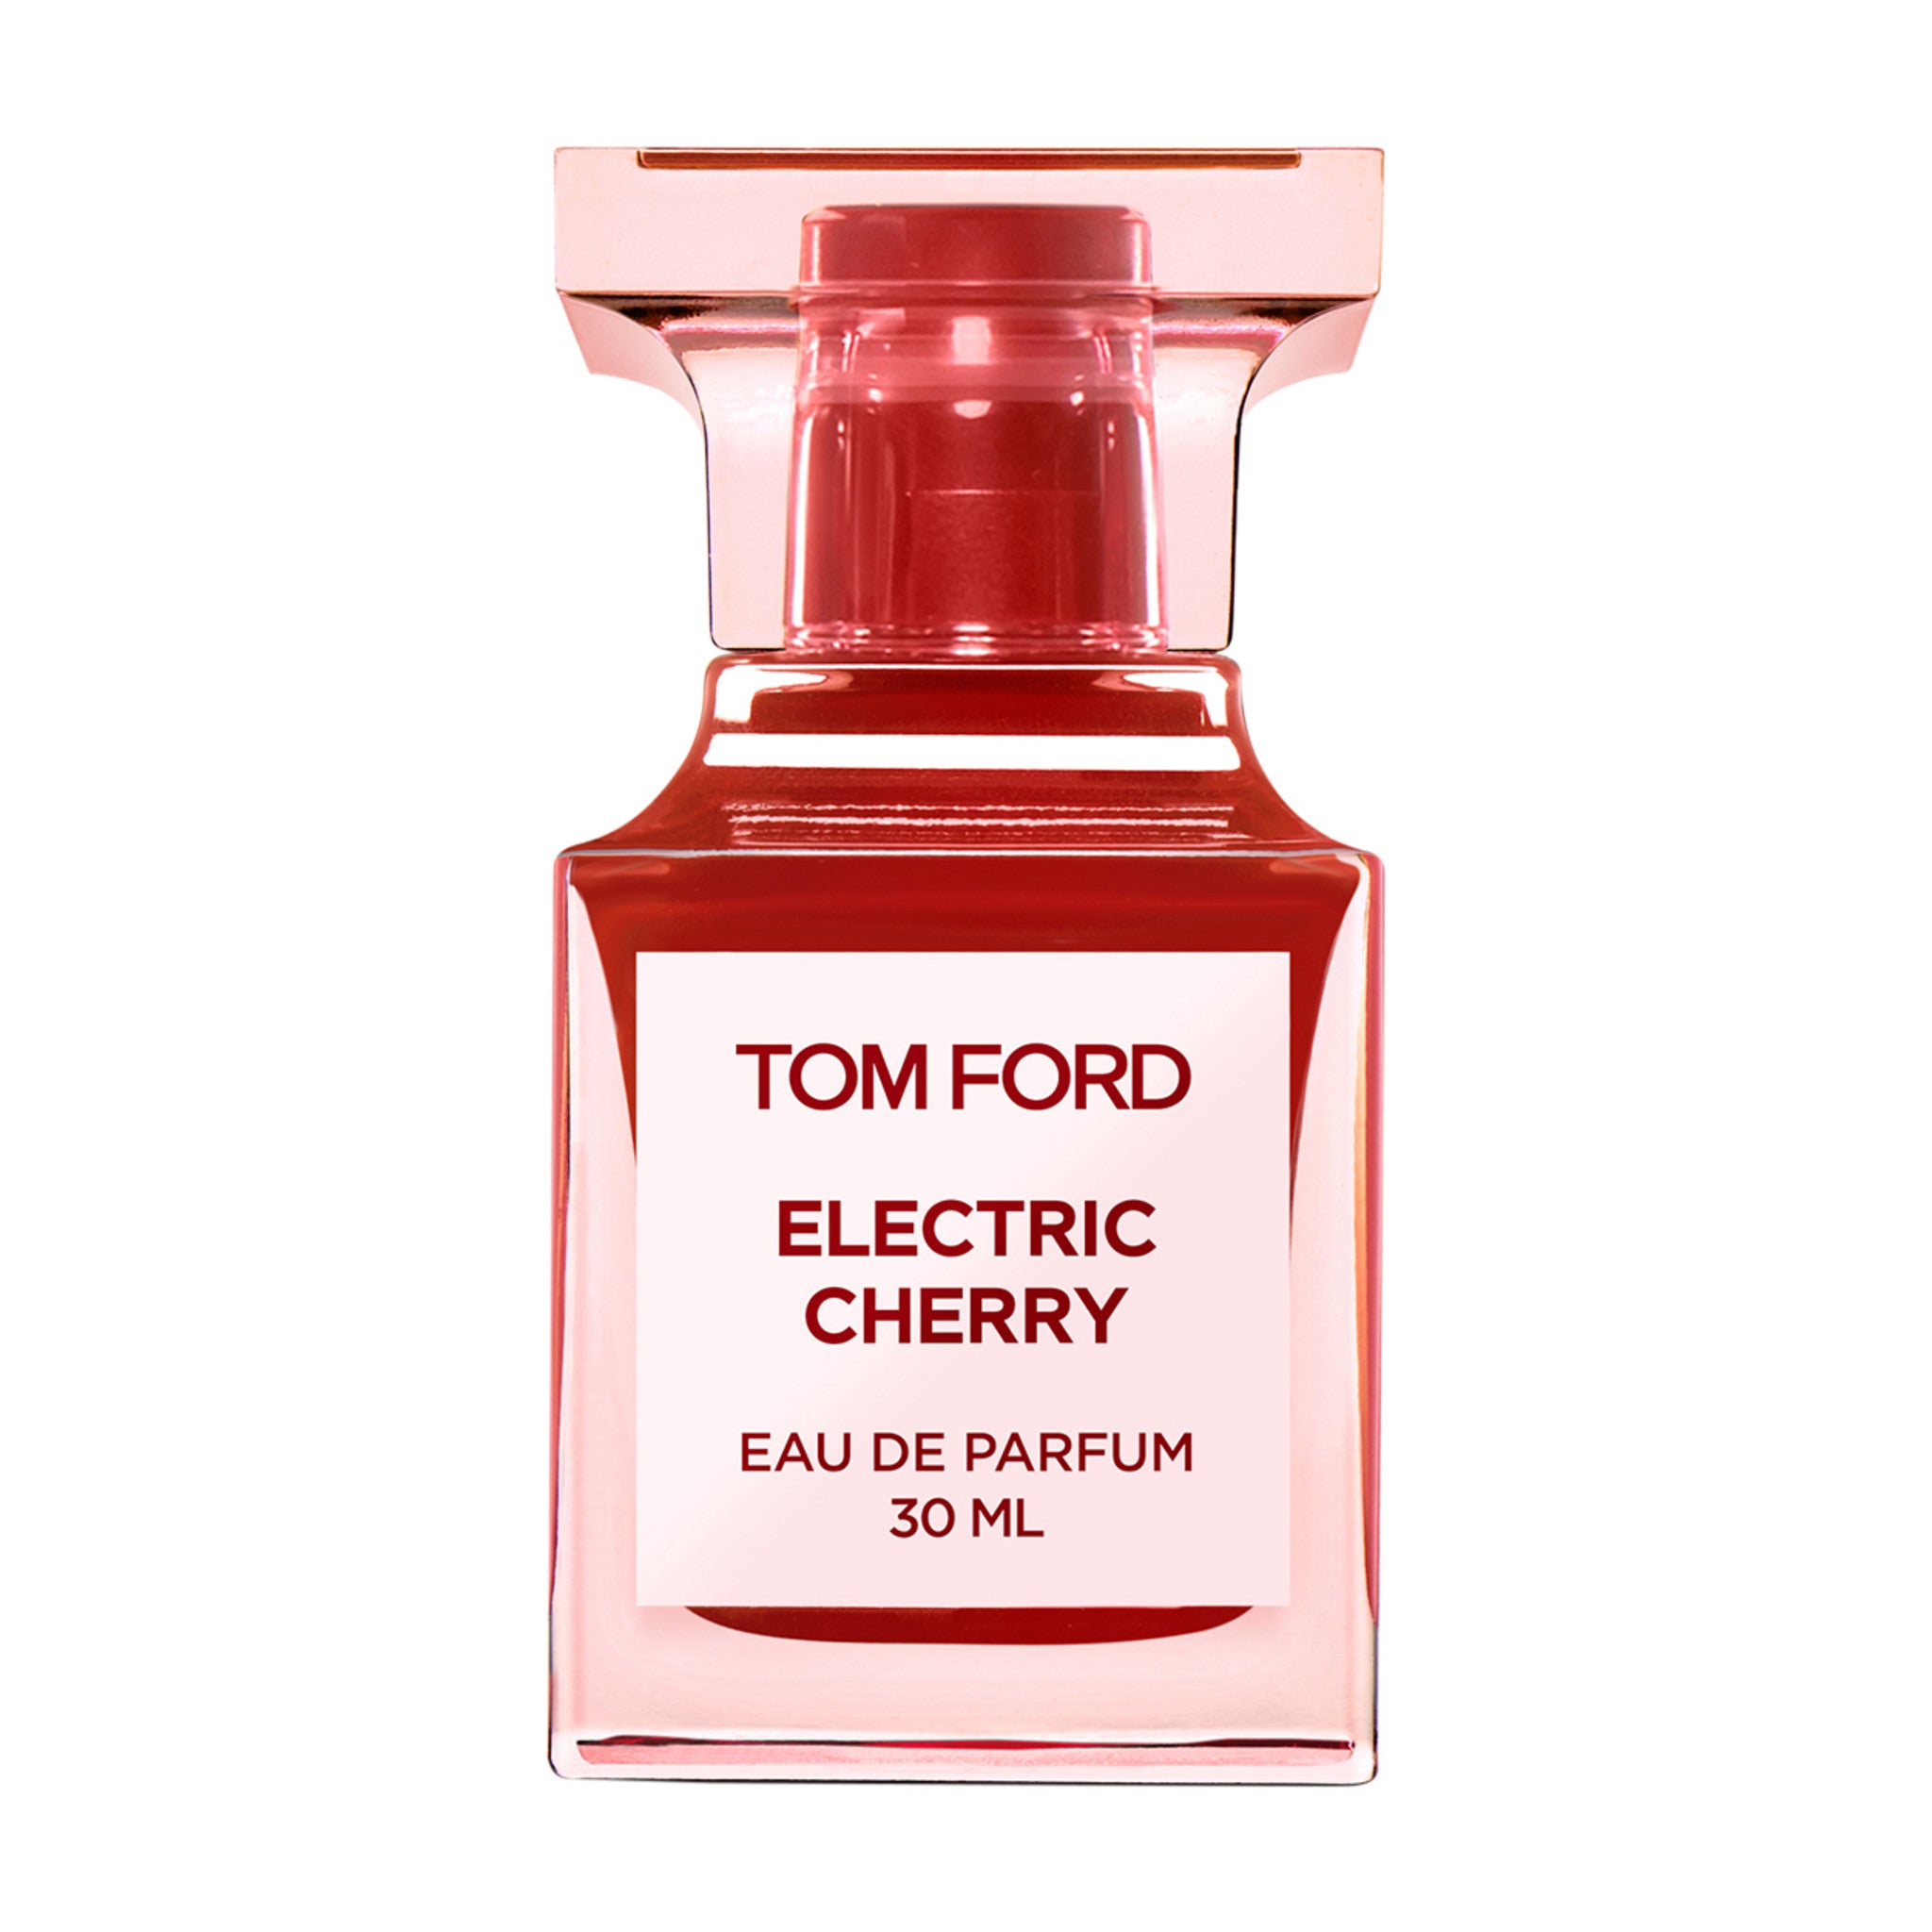 Electric Cherry Eau de Parfum main image.